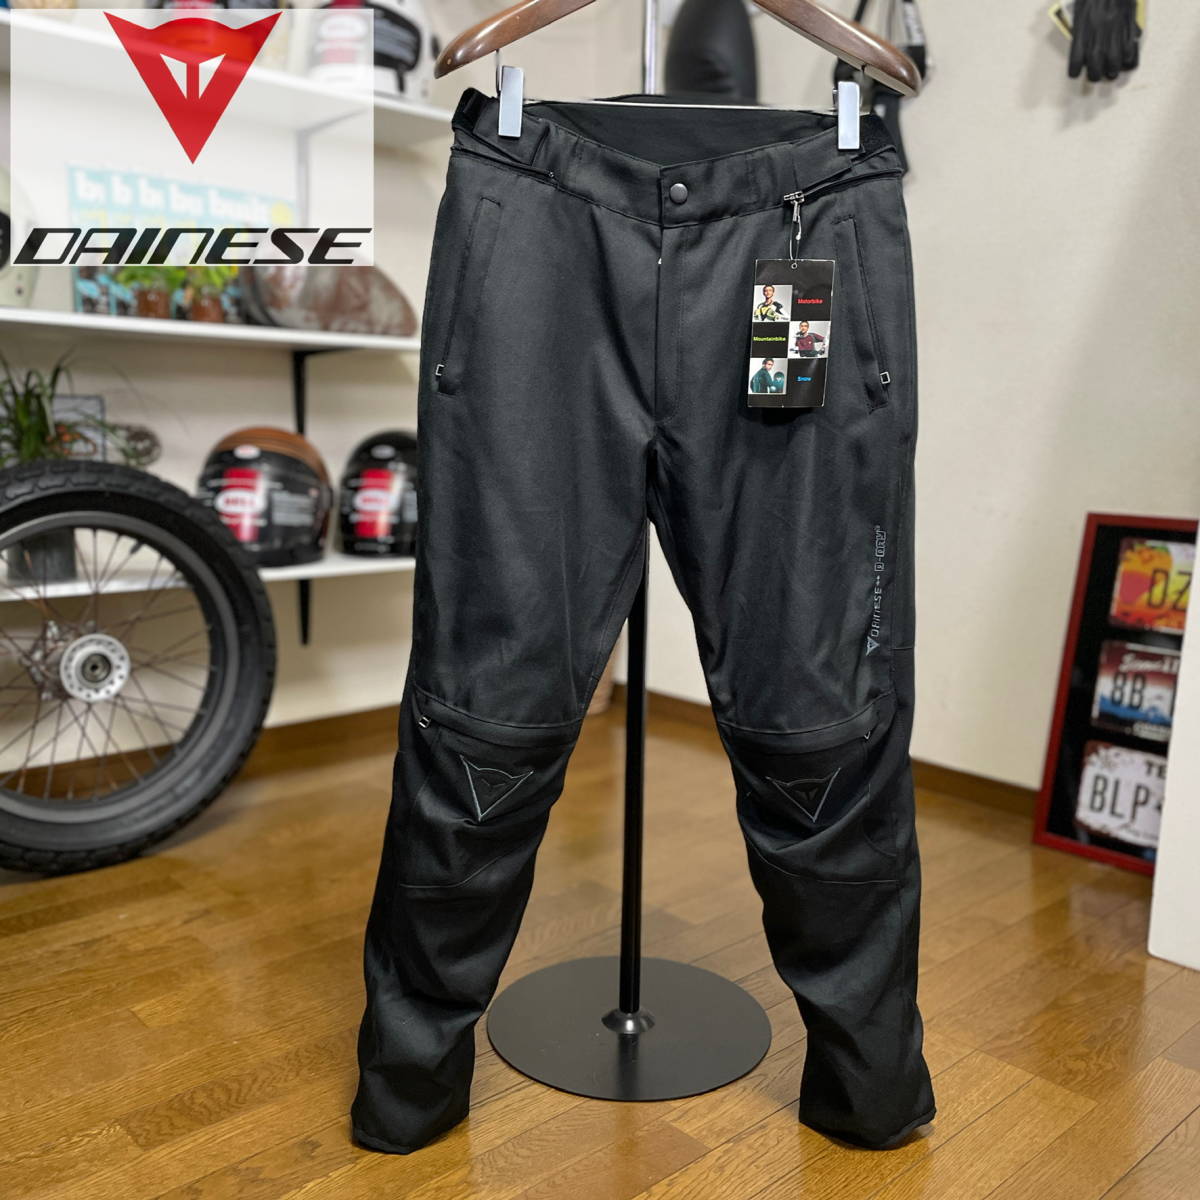 ダイネーゼ GALVESTONE D2 ブラック PANTS GORE-TEX サイズ バイク用品